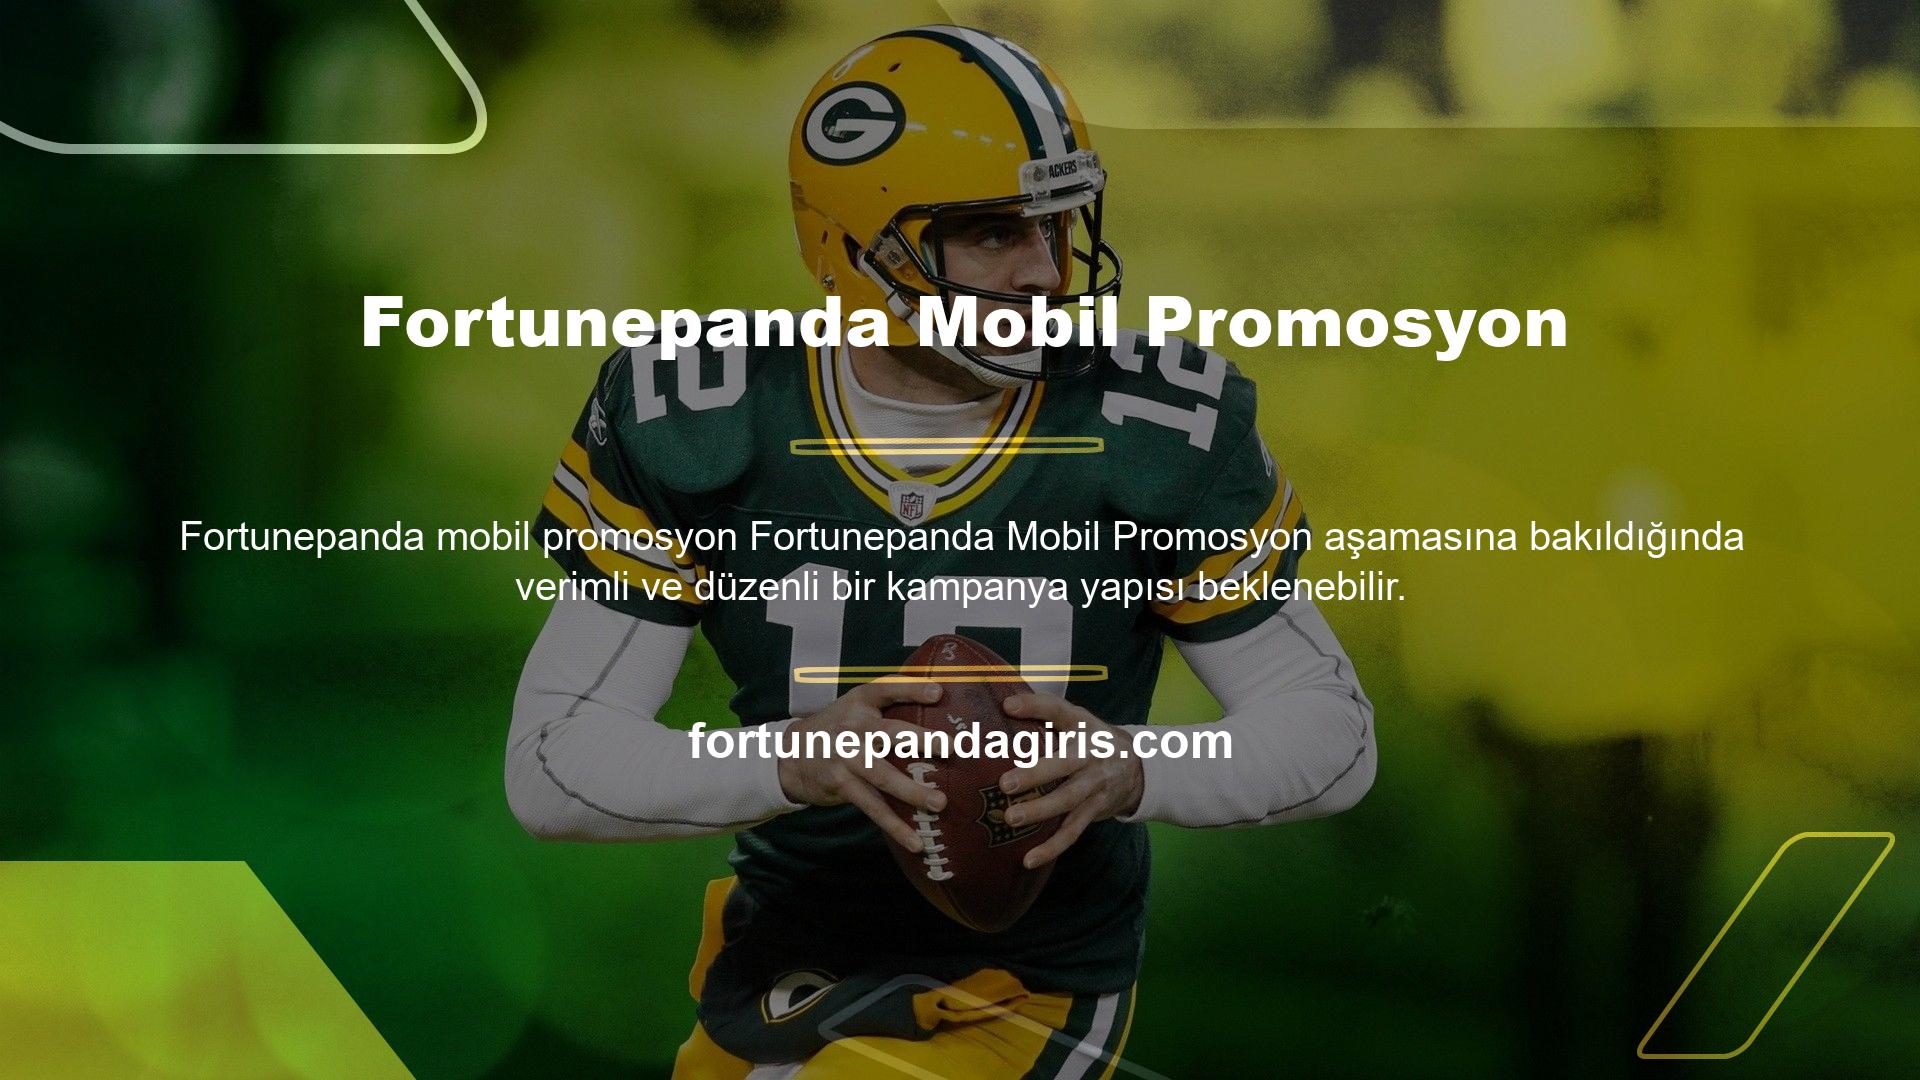 Fortunepanda Mobile özelliği, daha iyi donanımlı yapılar oluşturmanıza olanak tanır